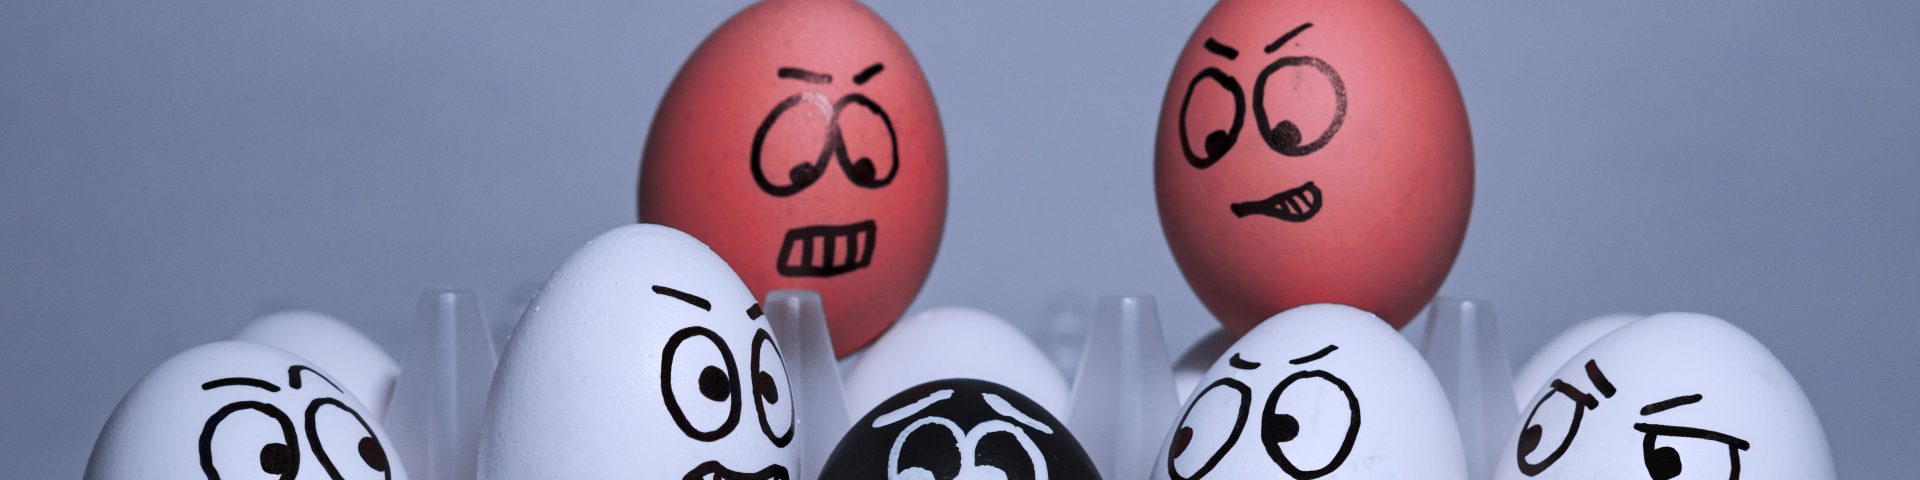 #bloggergegenrassismus Eier in verschiedenen Farben und mit verschiedenen Gesichtern